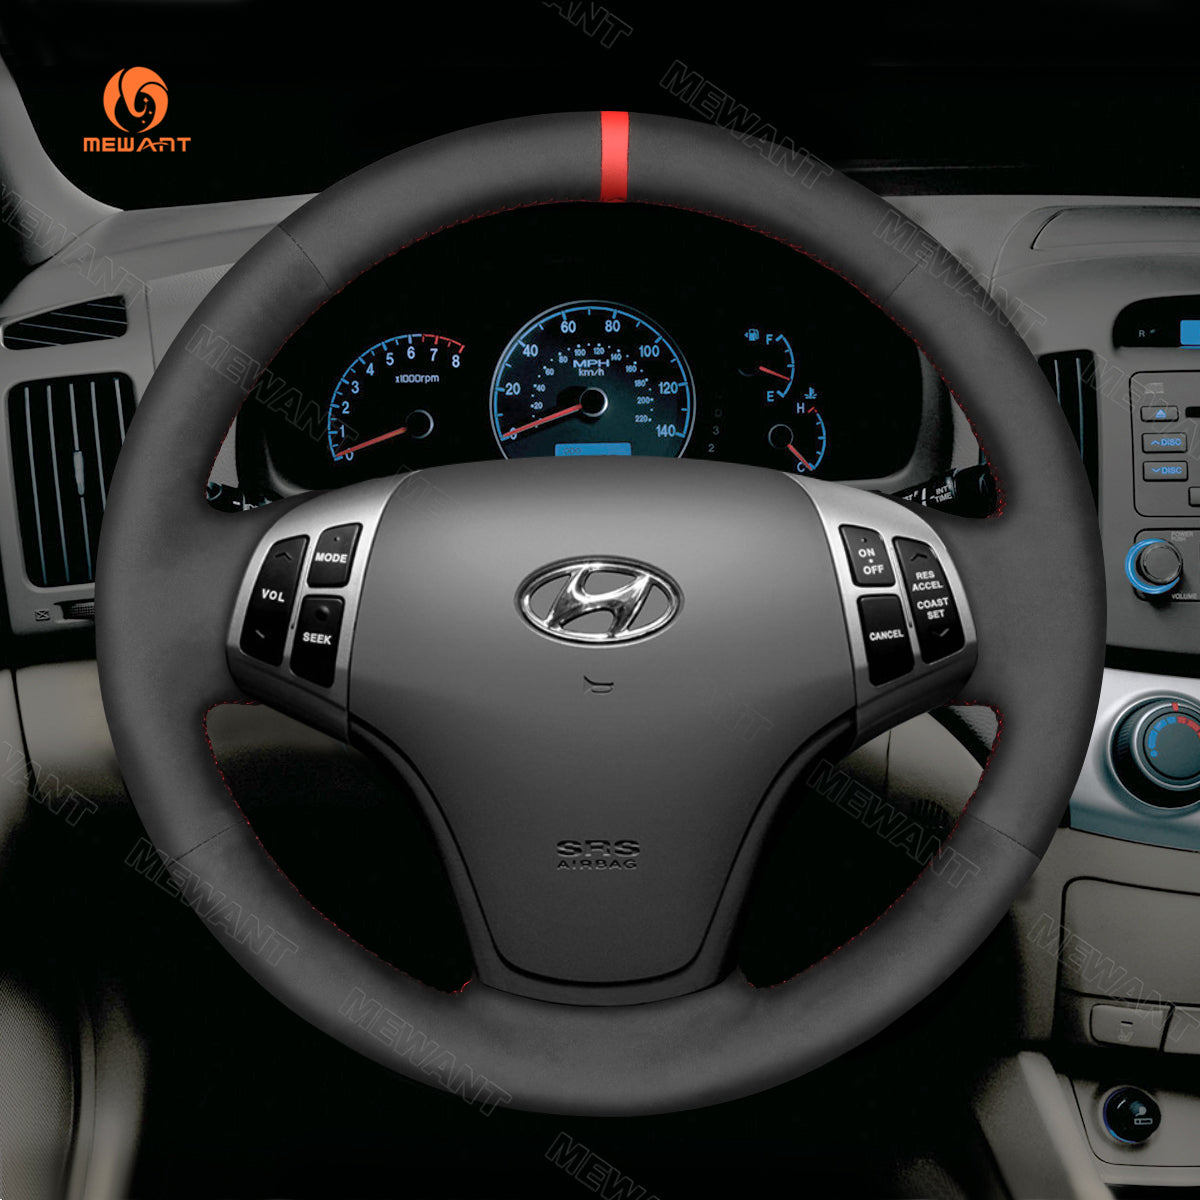 MEWANT Hand Stitch Black Suede Car Steering Wheel Cover for Hyundai Elantra 2007-2010